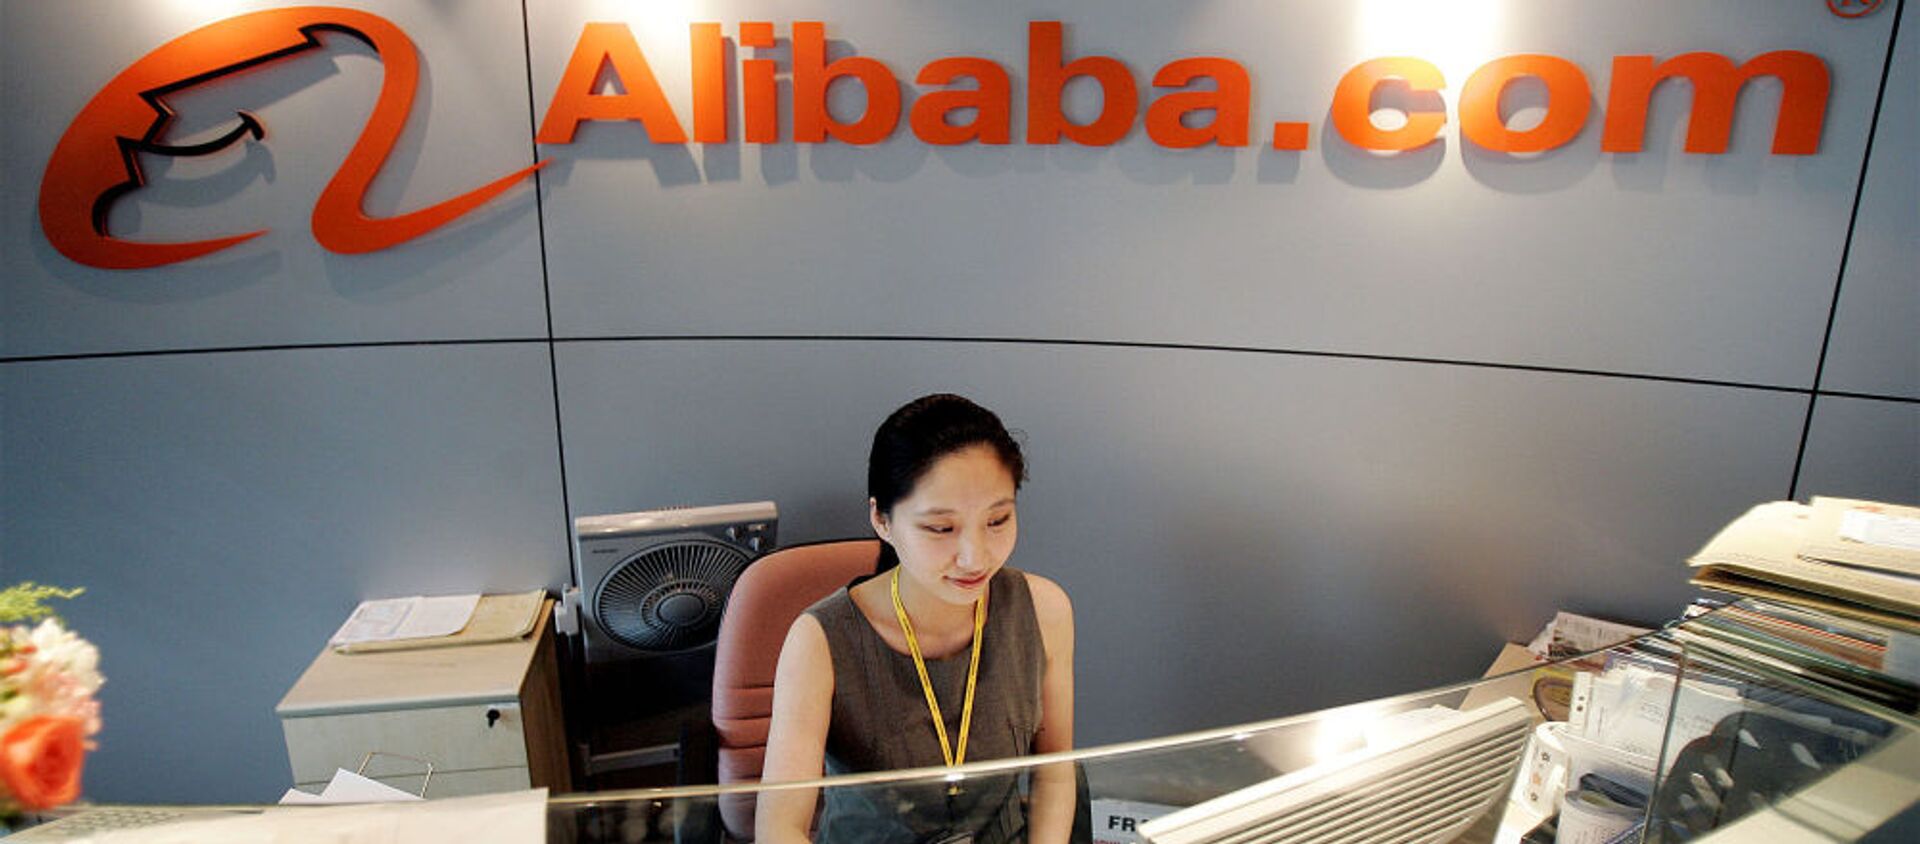 Văn phòng công ty Alibaba tại Thượng Hải, Trung Quốc. - Sputnik Việt Nam, 1920, 15.01.2021